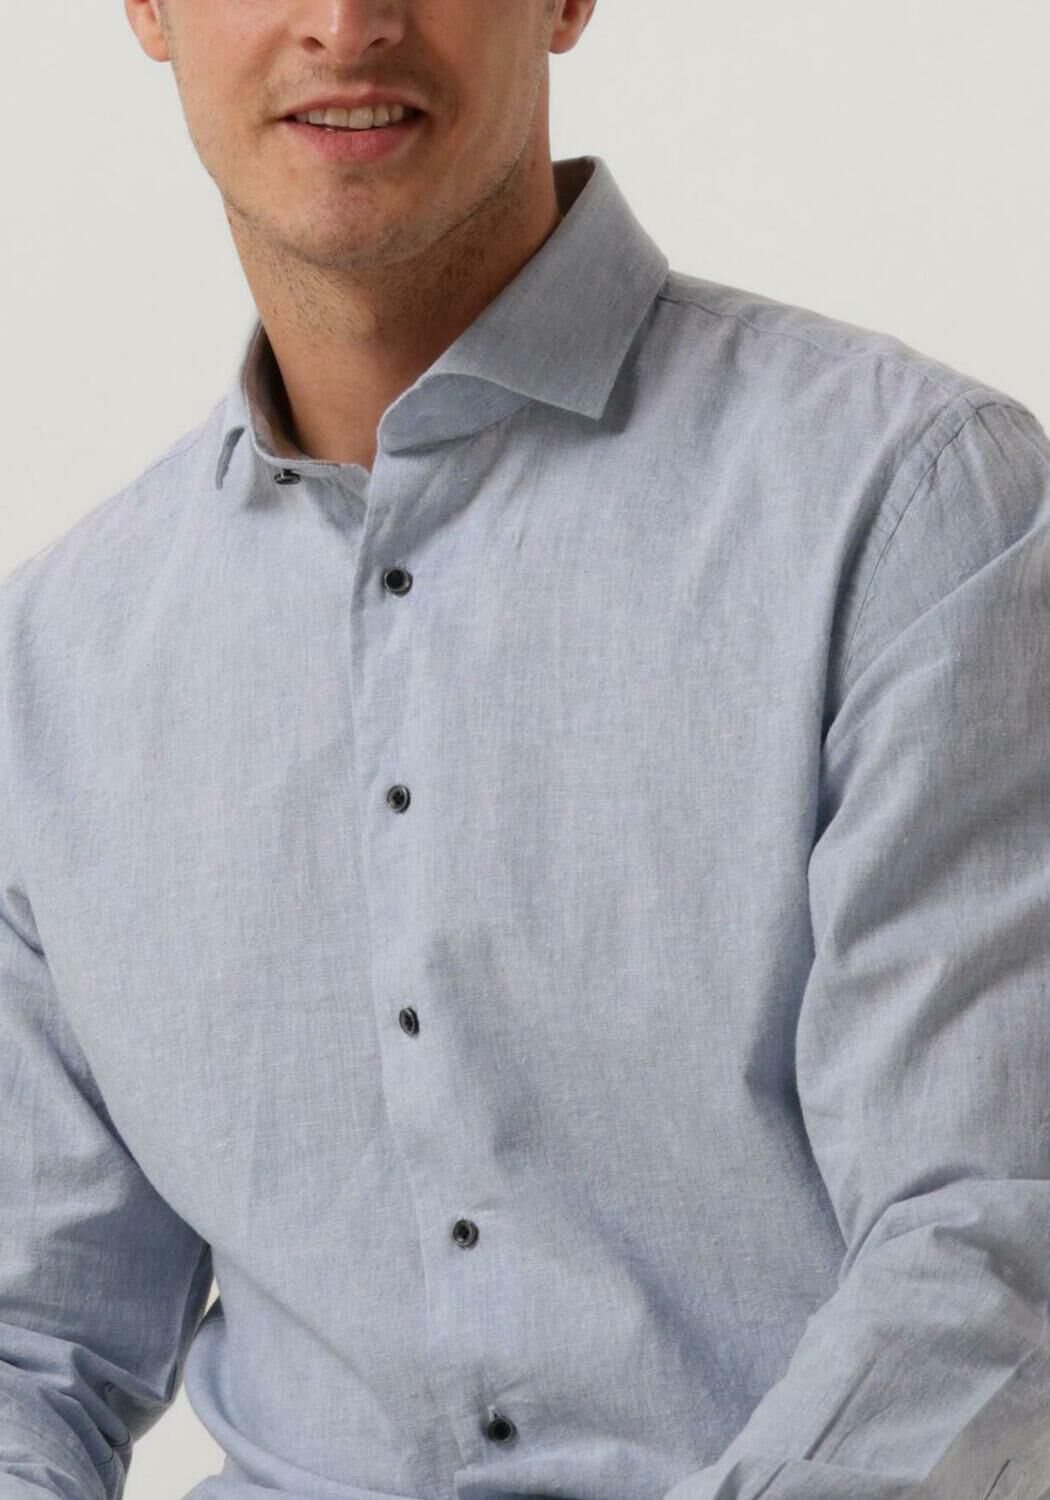 PROFUOMO Heren Overhemden Shirt Cutaway Sc Cotton Linnen Lichtblauw